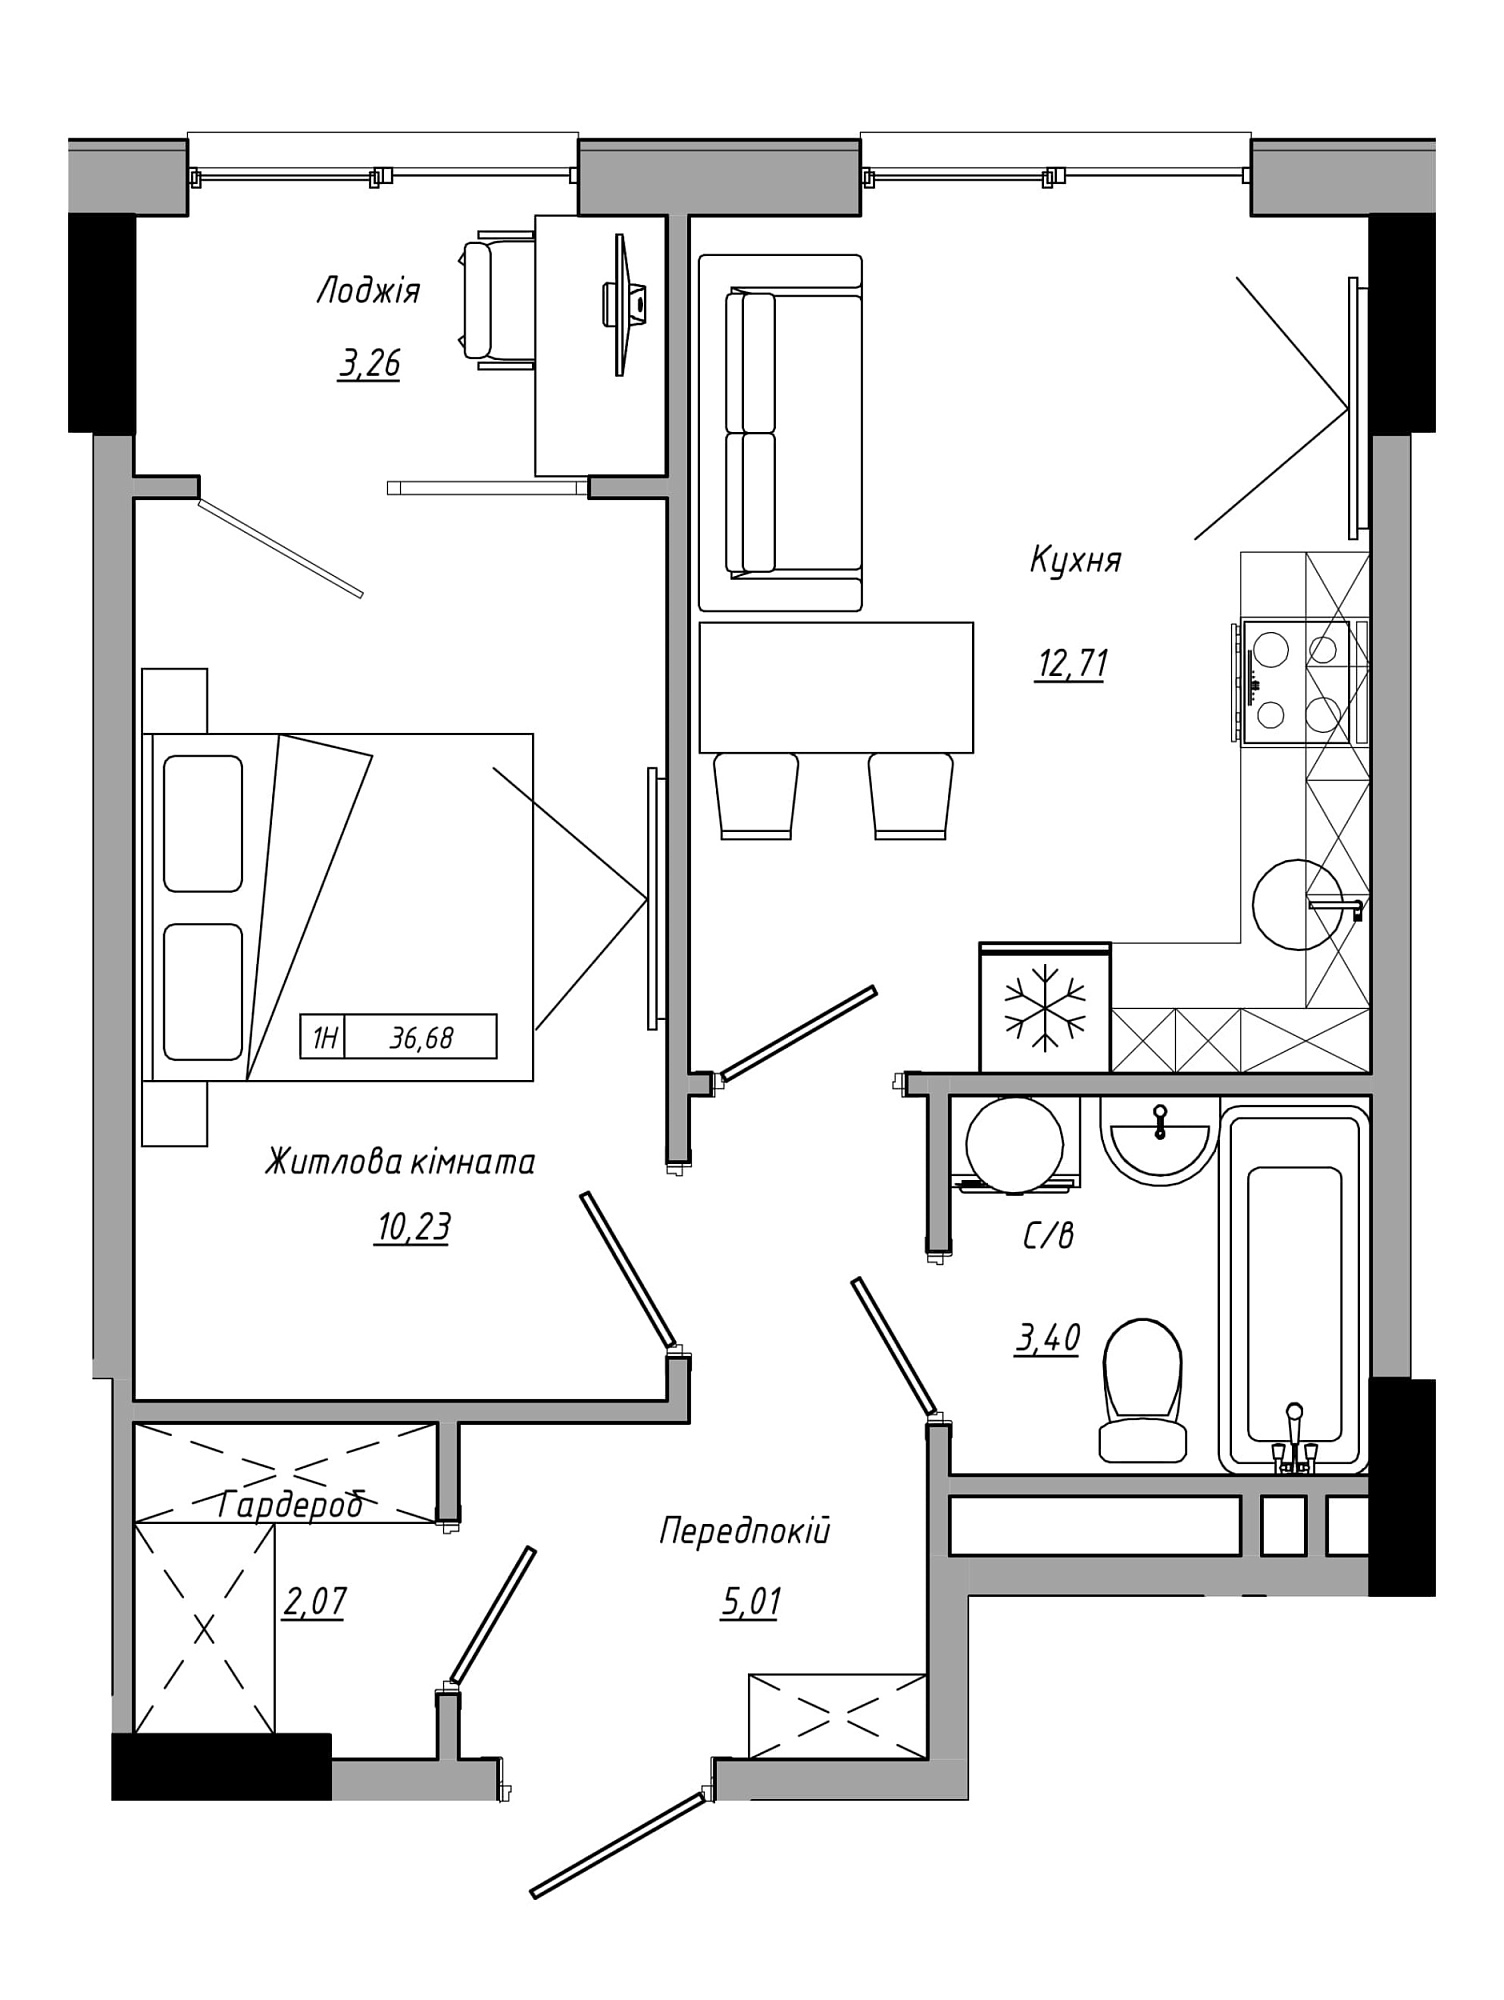 Планування 1-к квартира площею 36.68м2, AB-21-14/00116.